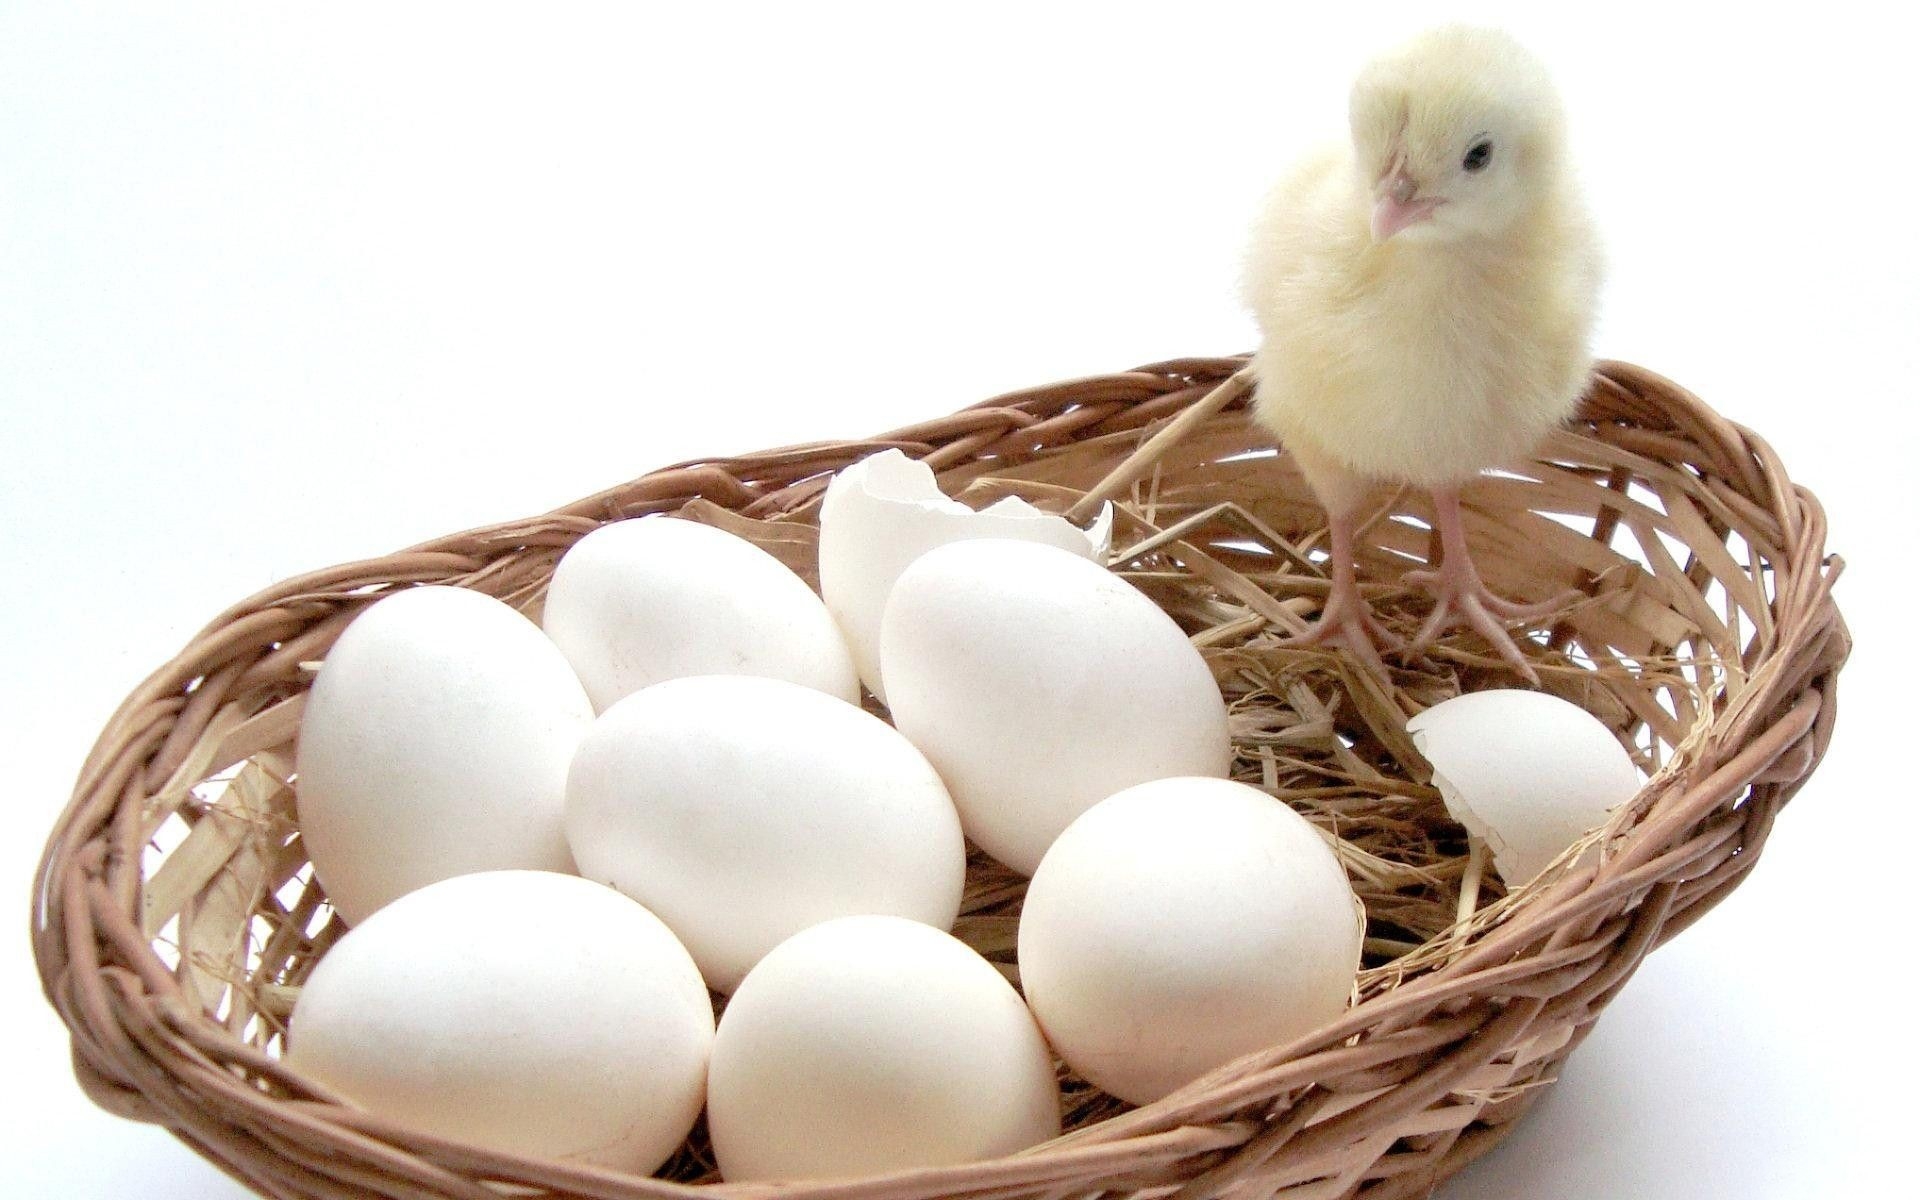 Ломан Уайт - яичный кросс кур. Описание, характеристики, особенности выращивания и кормления